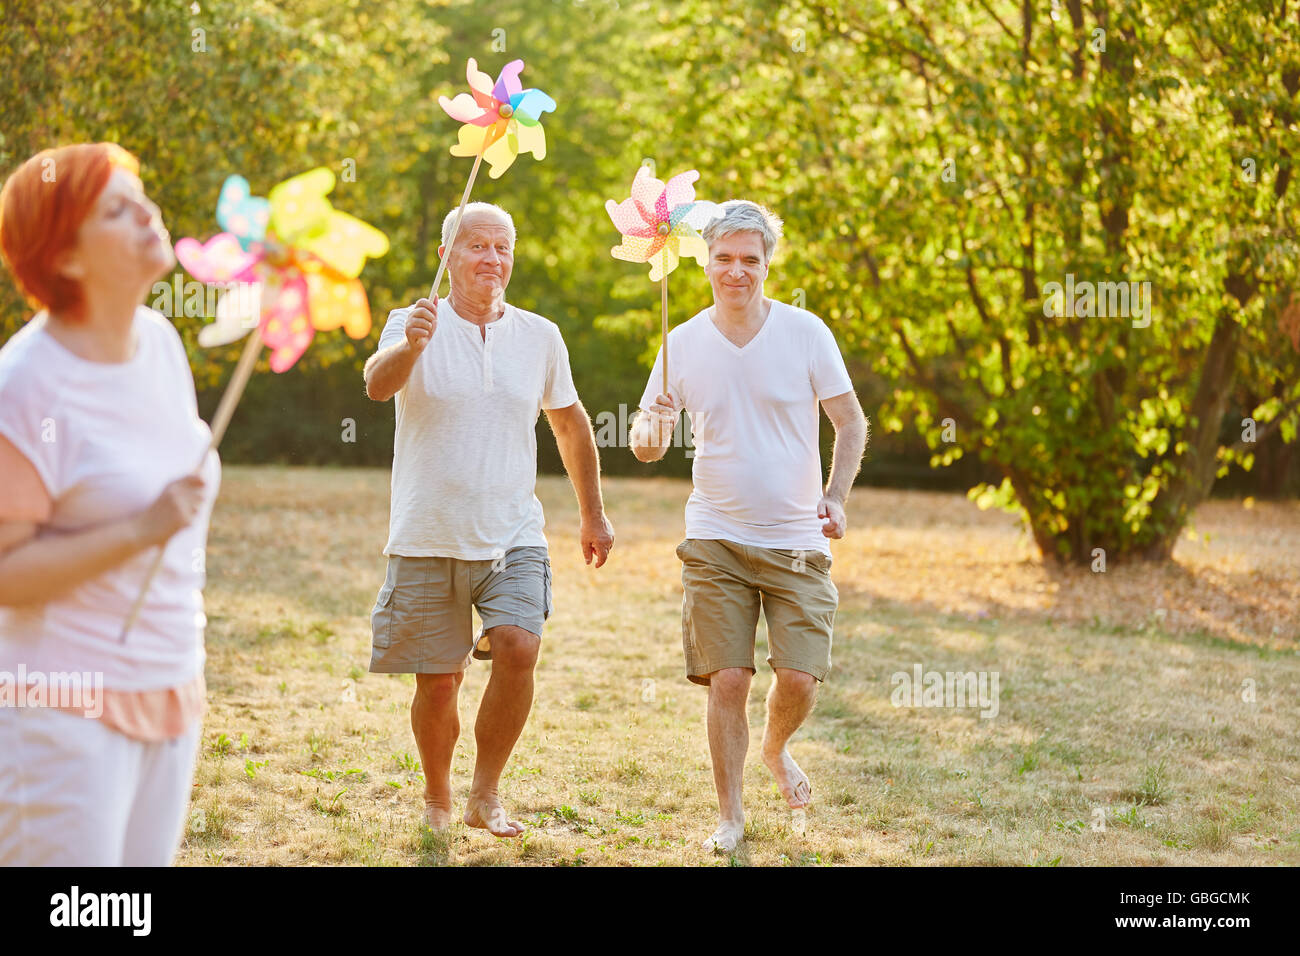 Los ancianos se divierten en el parque y la celebración de molinetes Foto de stock